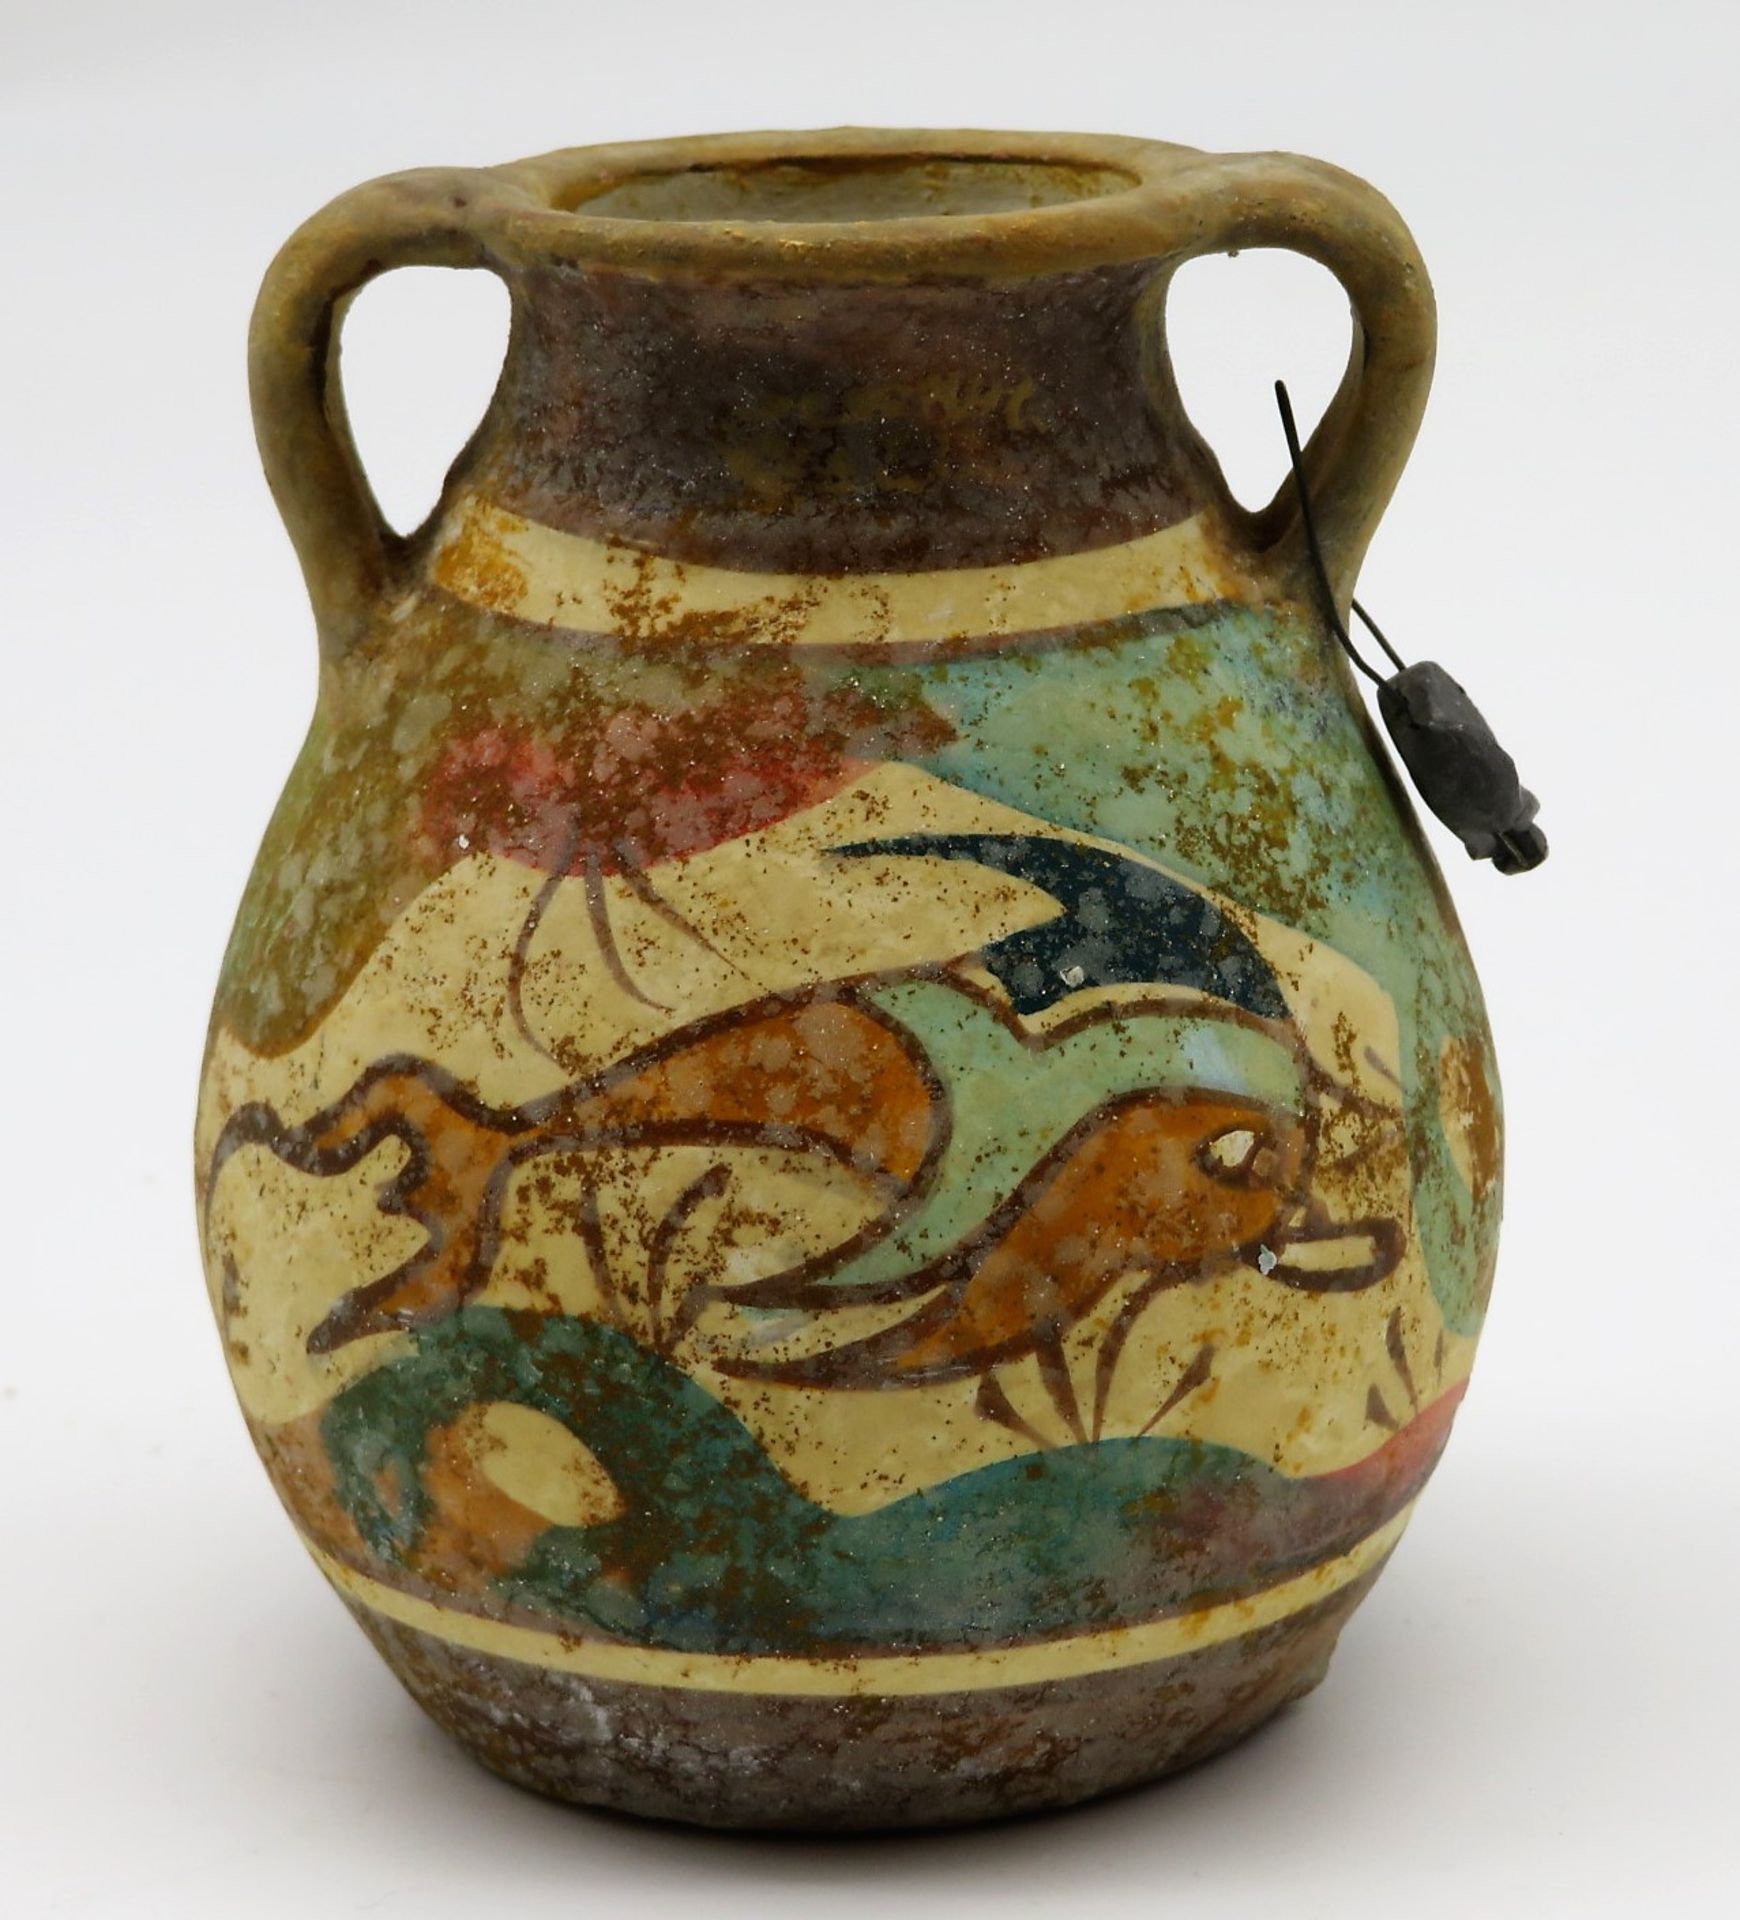 Vase mit 2 seitlichen Handhaben, Griechenland, Ton mit polychromer Bemalung, h 9 cm, d 8 cm.